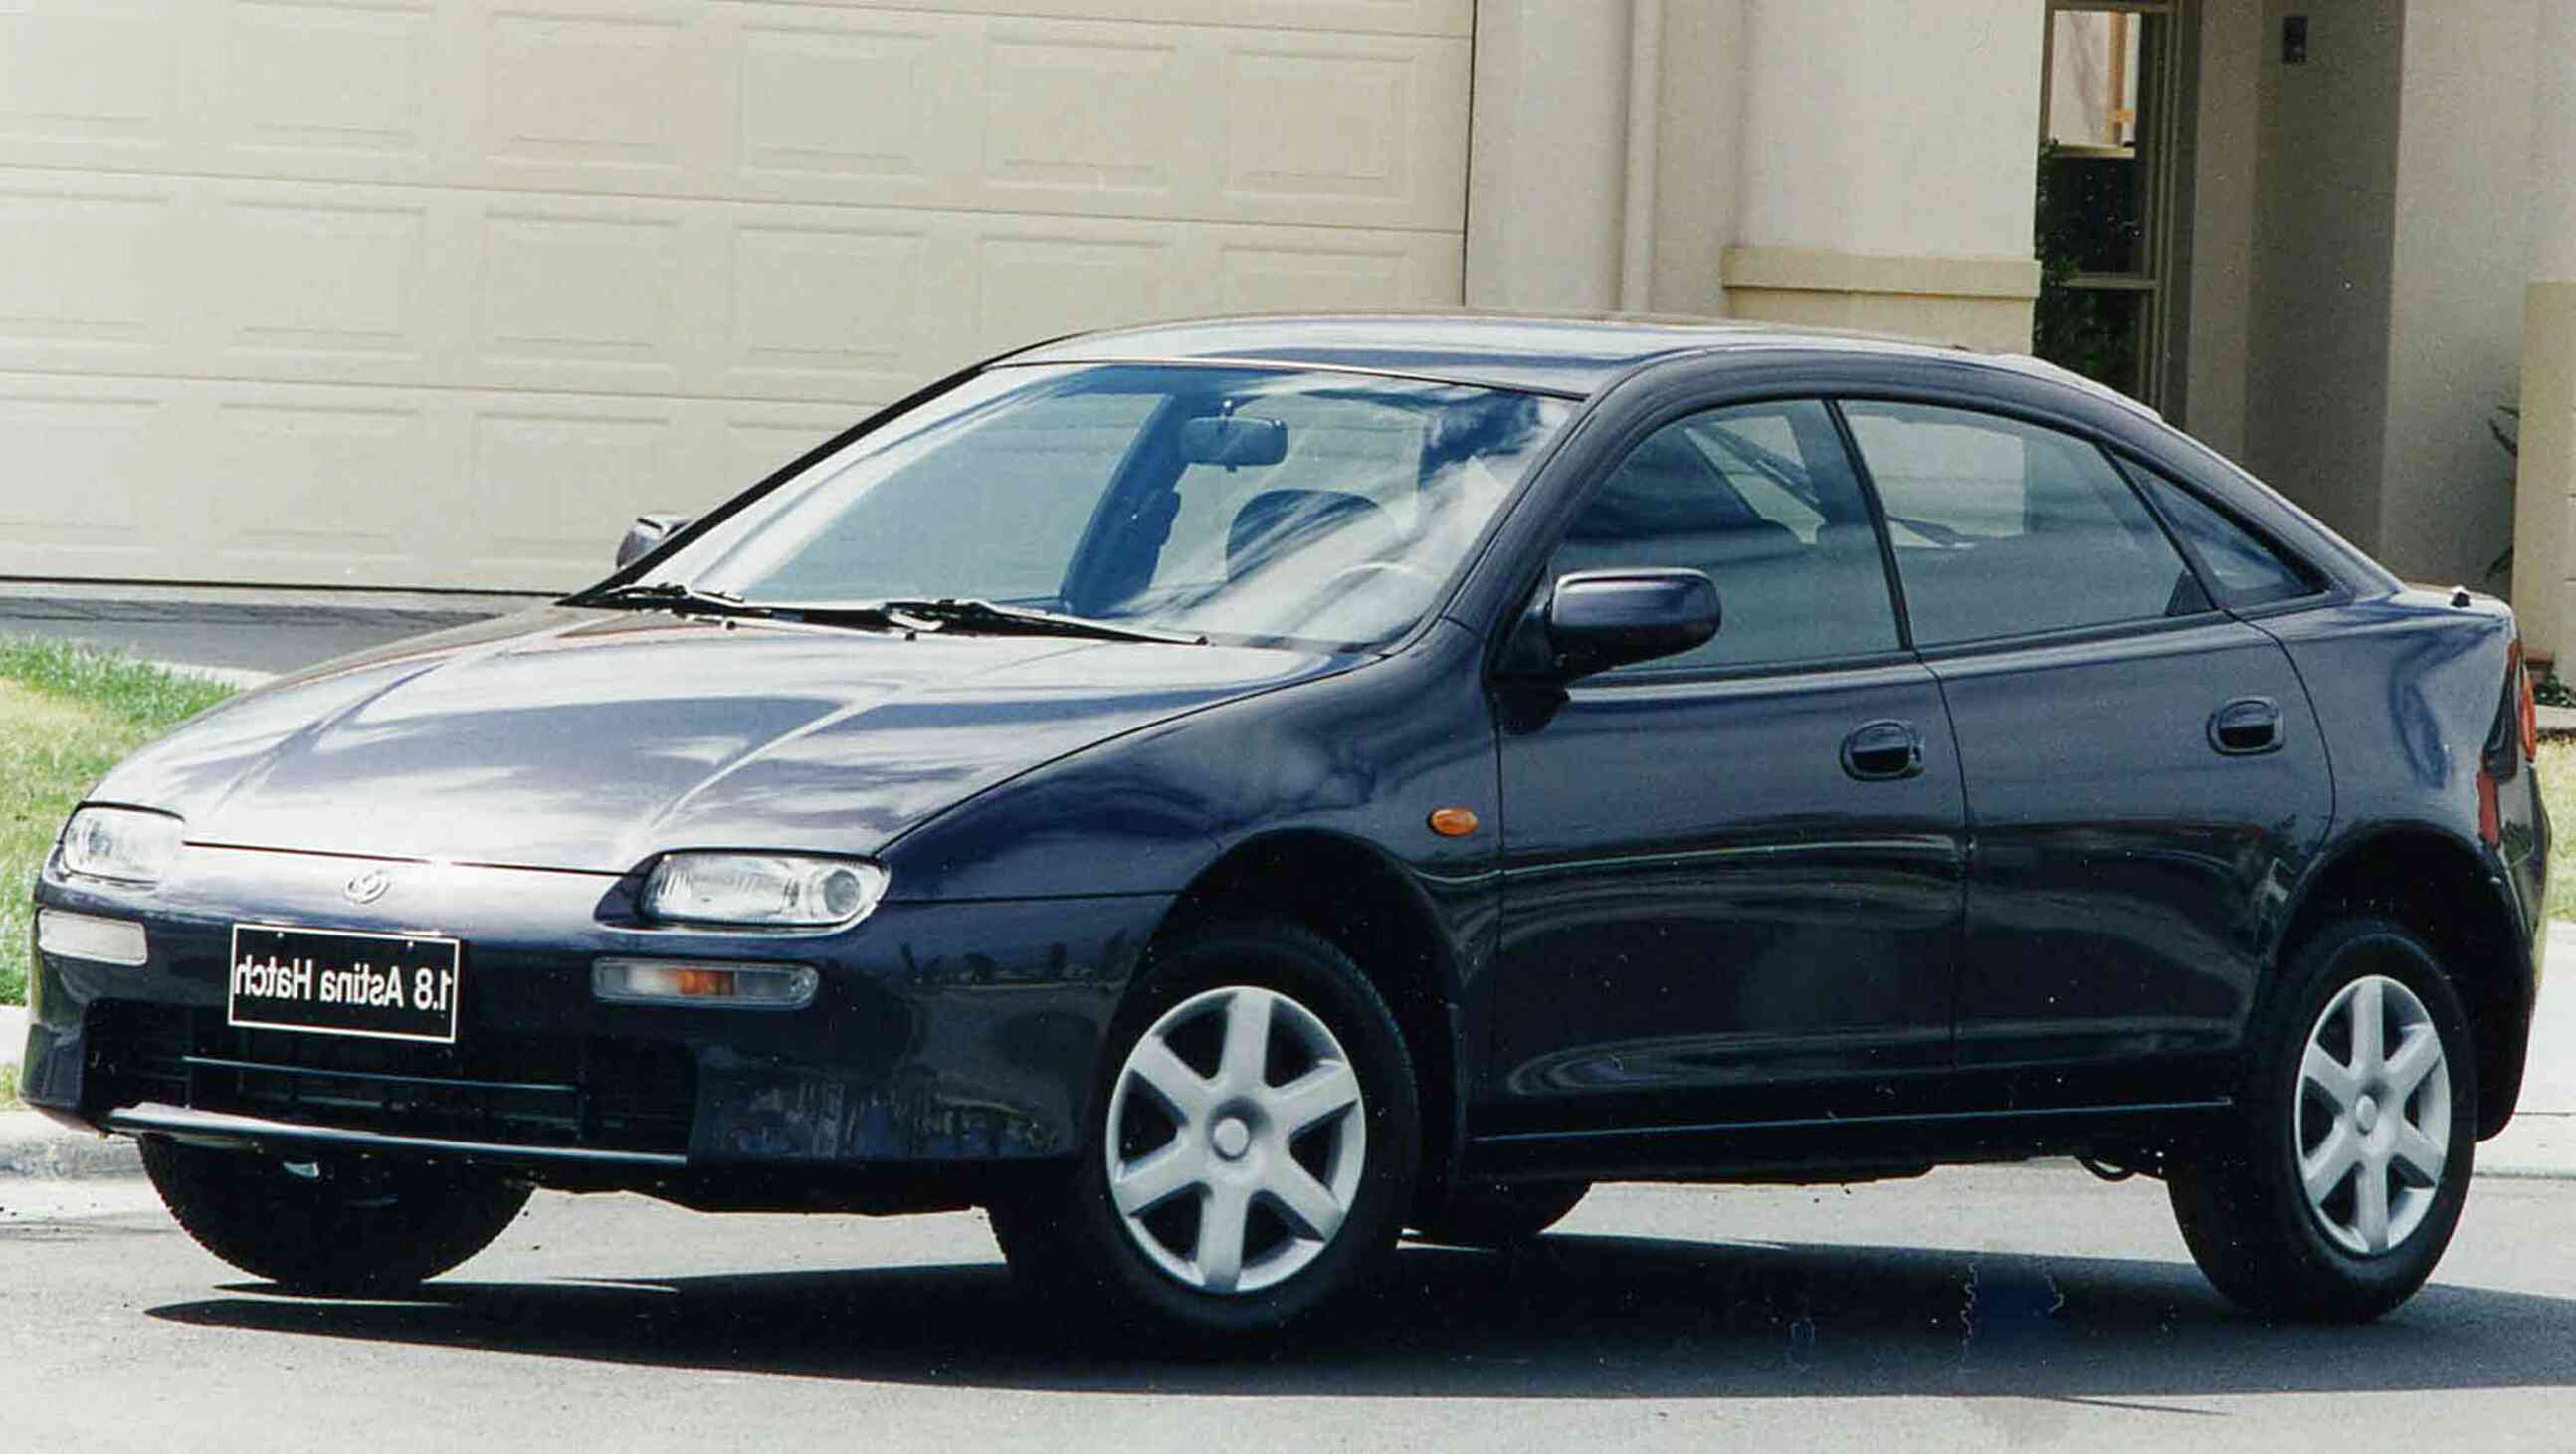 Mazda 323 1995 for sale in UK | 57 used Mazda 323 1995